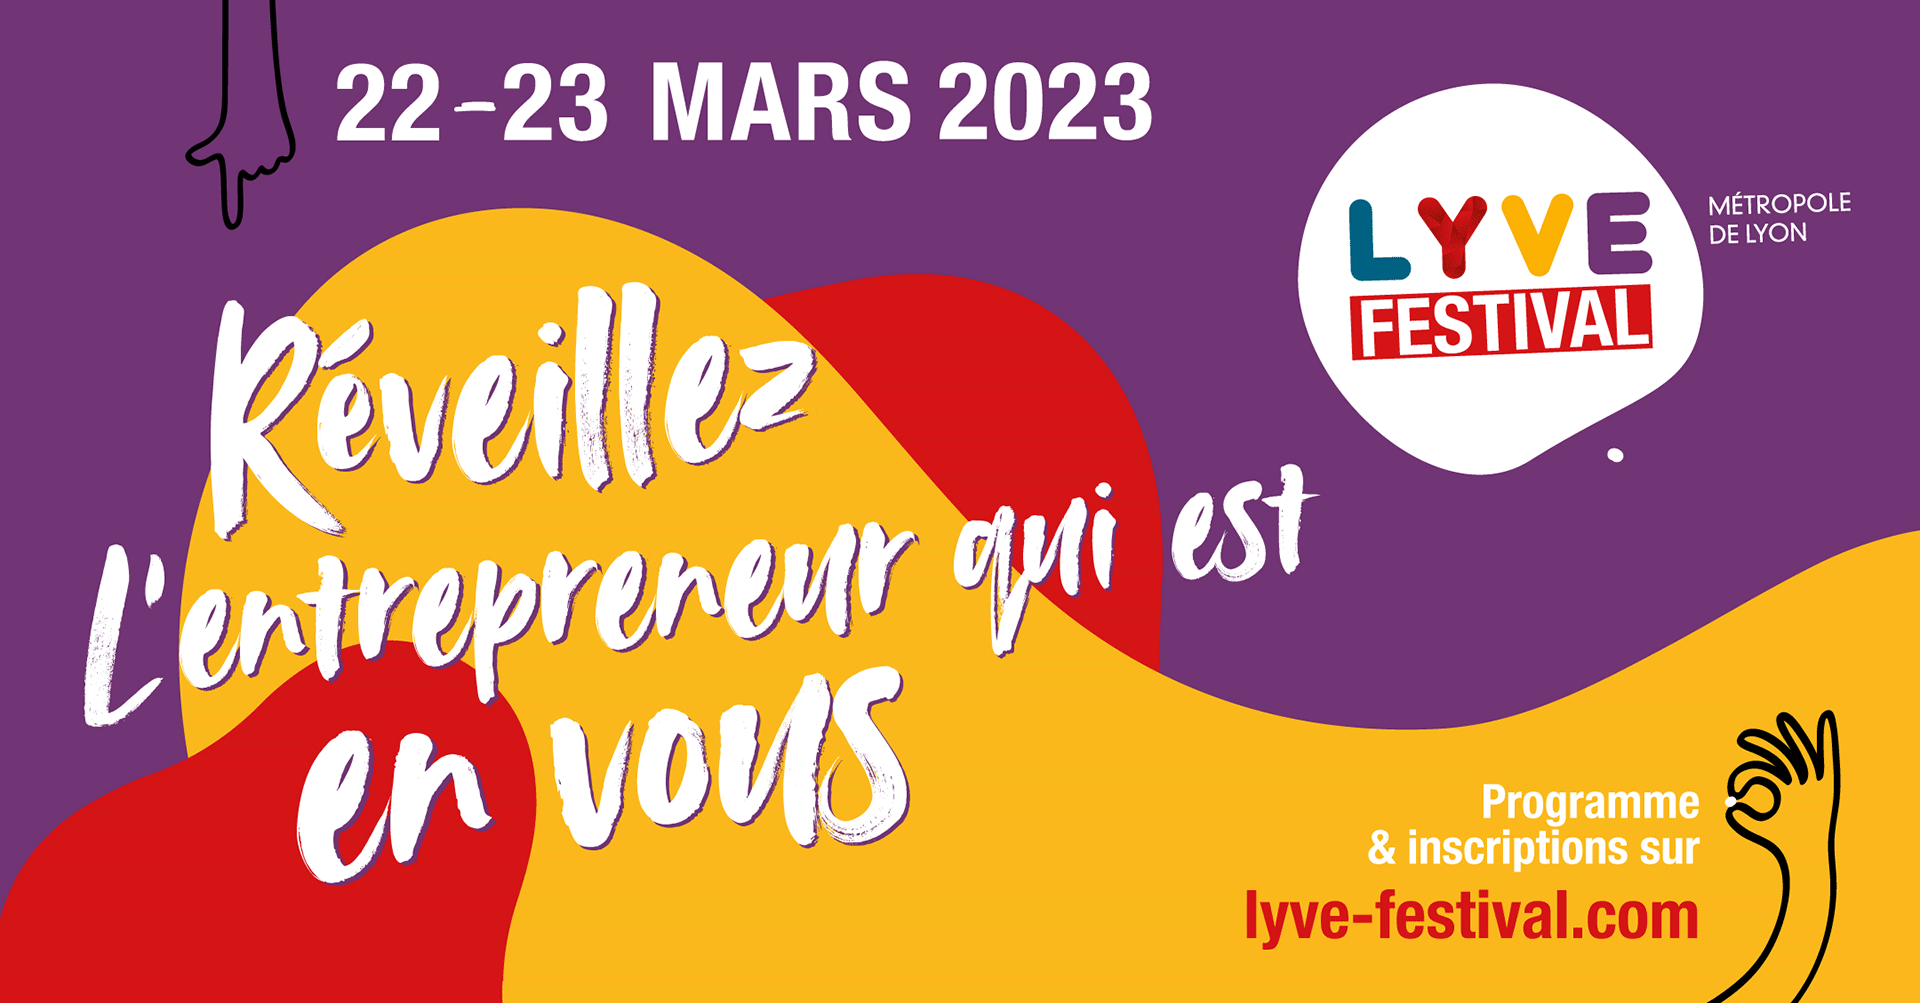 Réveillez l'entrepreneur·e qui est en vous au Festival LYVE, les 22 et 23 mars 2023 dans la métropole de Lyon. Programme et inscriptions sur lyve-festival.com